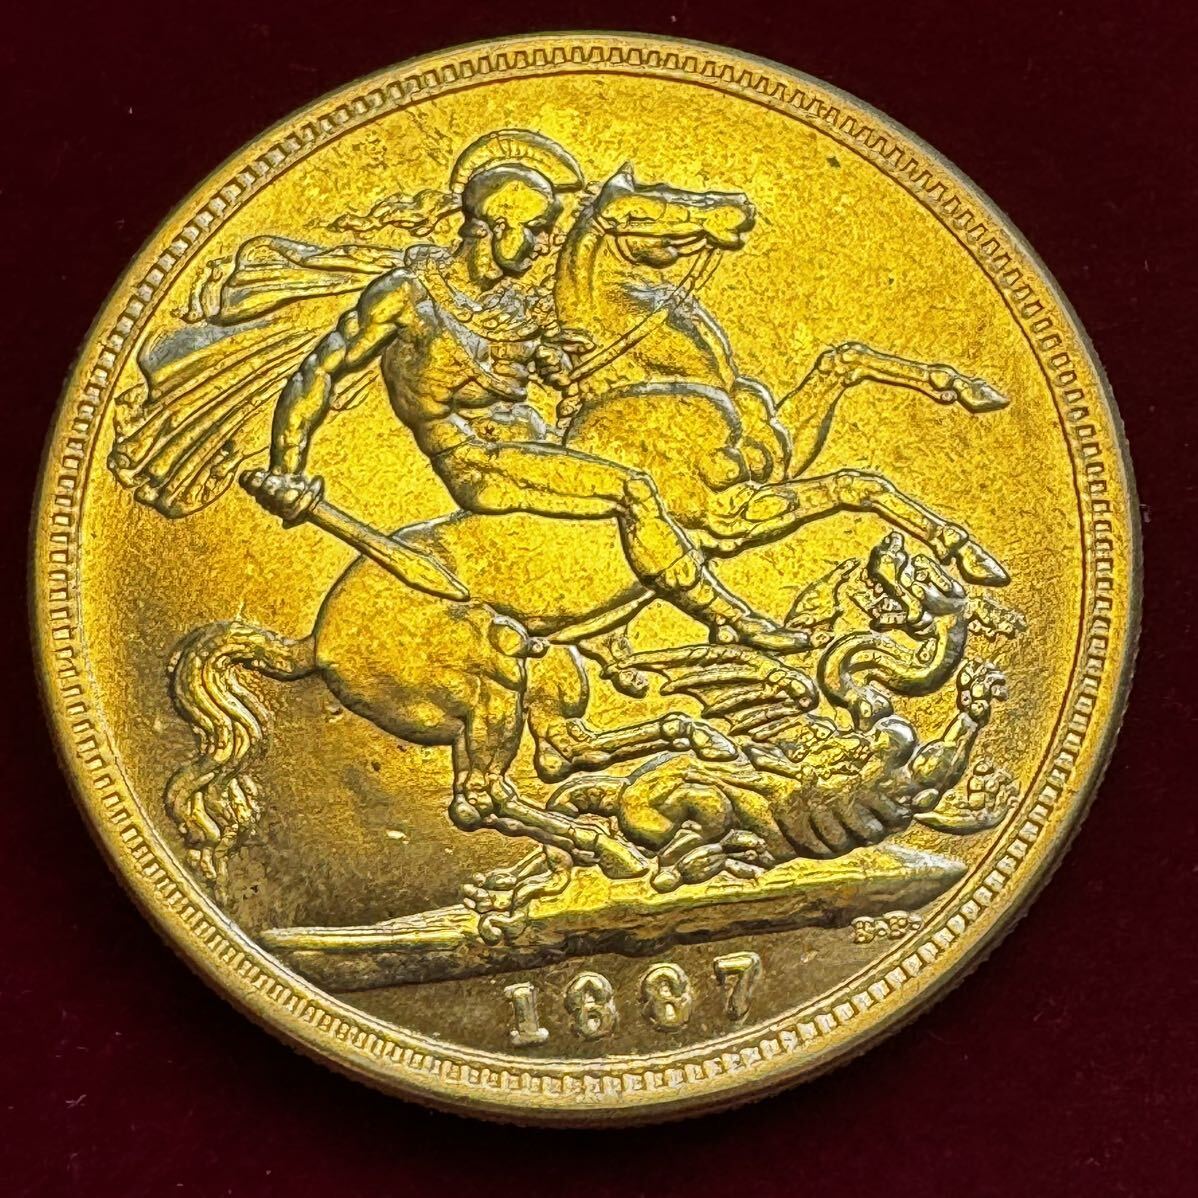 イギリス 硬貨 古銭 ヴィクトリア女王 1887年 聖ジョージ 竜殺し ナイト ドラゴン コイン 金貨 外国古銭 海外硬貨の画像2